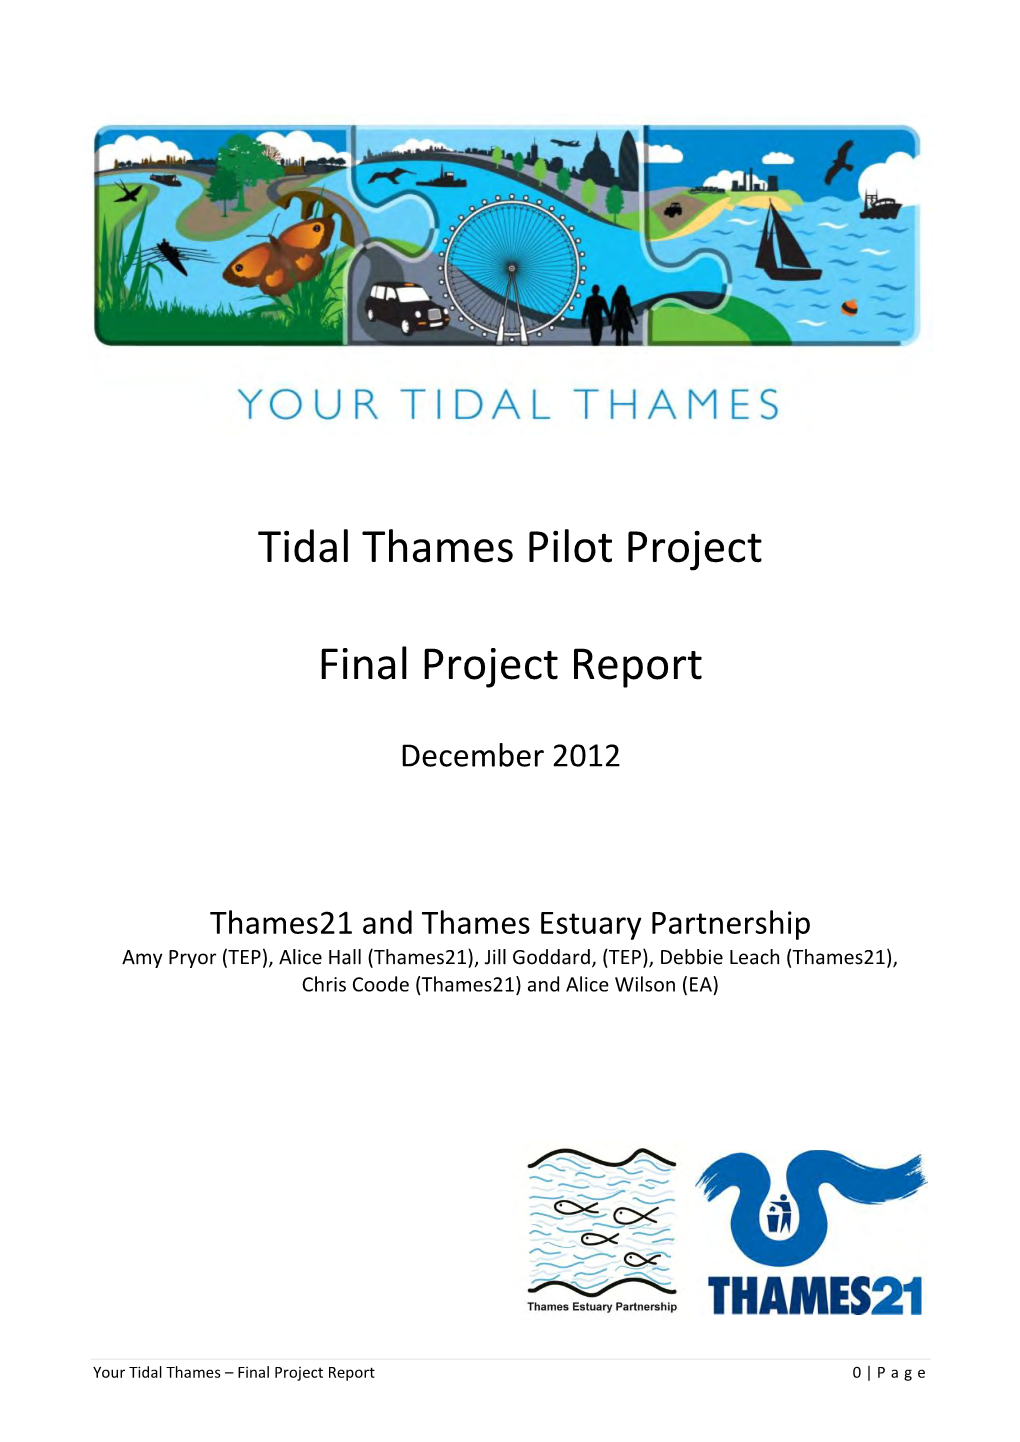 Tidal Thames Pilot Project Final Project Report